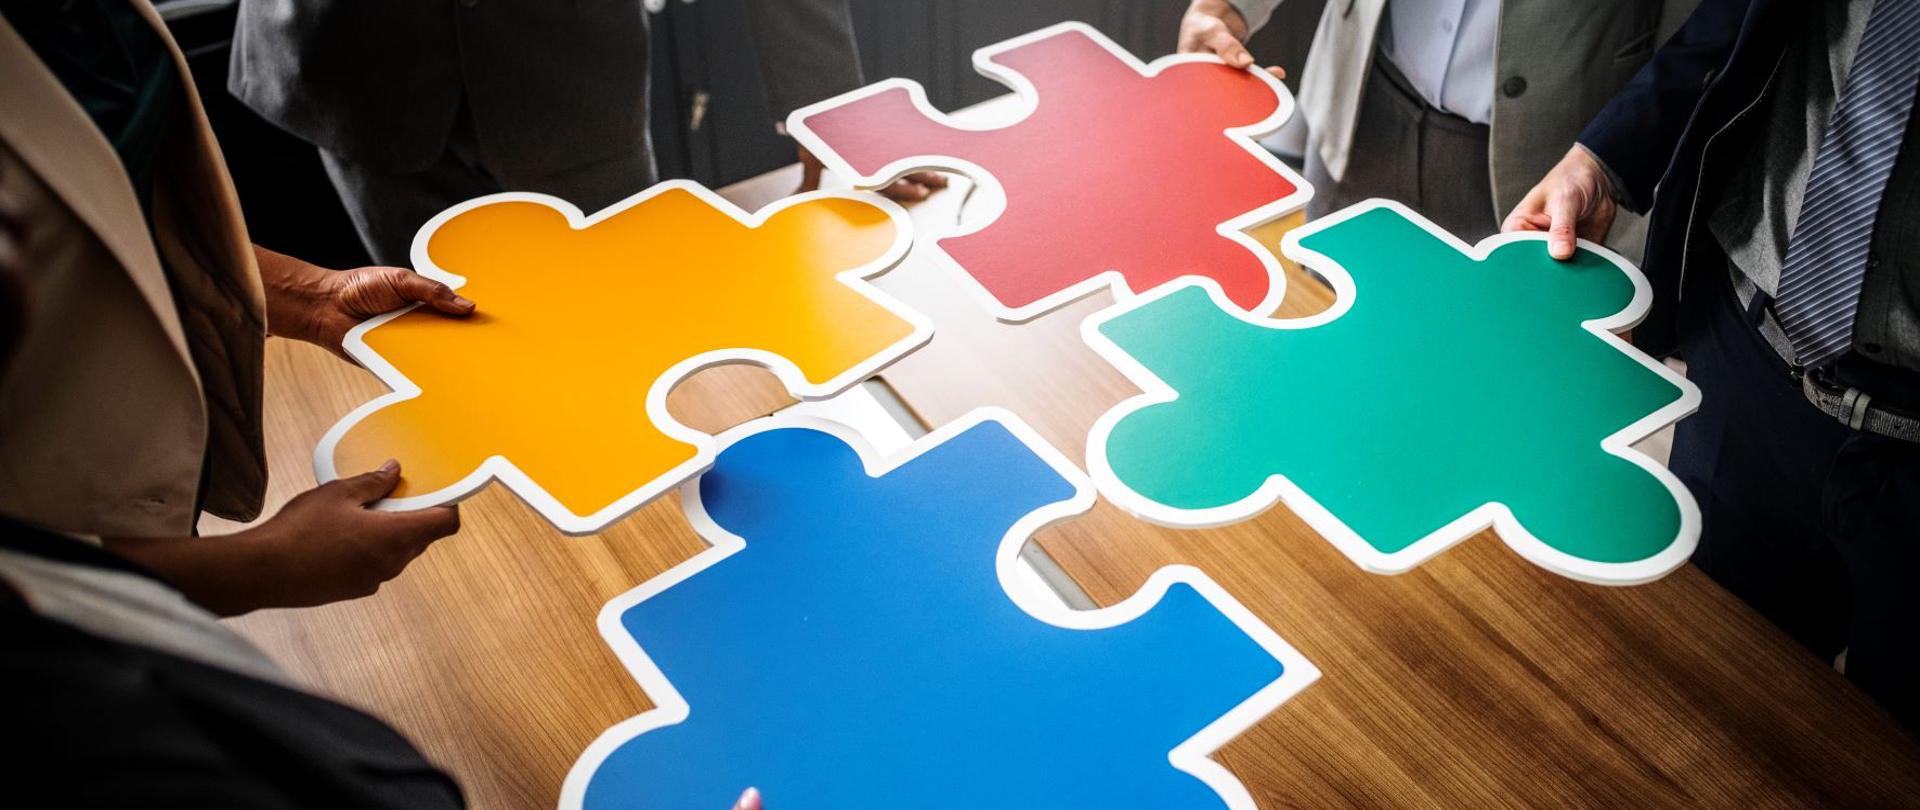 Ludzie trzymają cztery puzzle w kolorach niebieskim, żółtym, czerwonym i zielonym